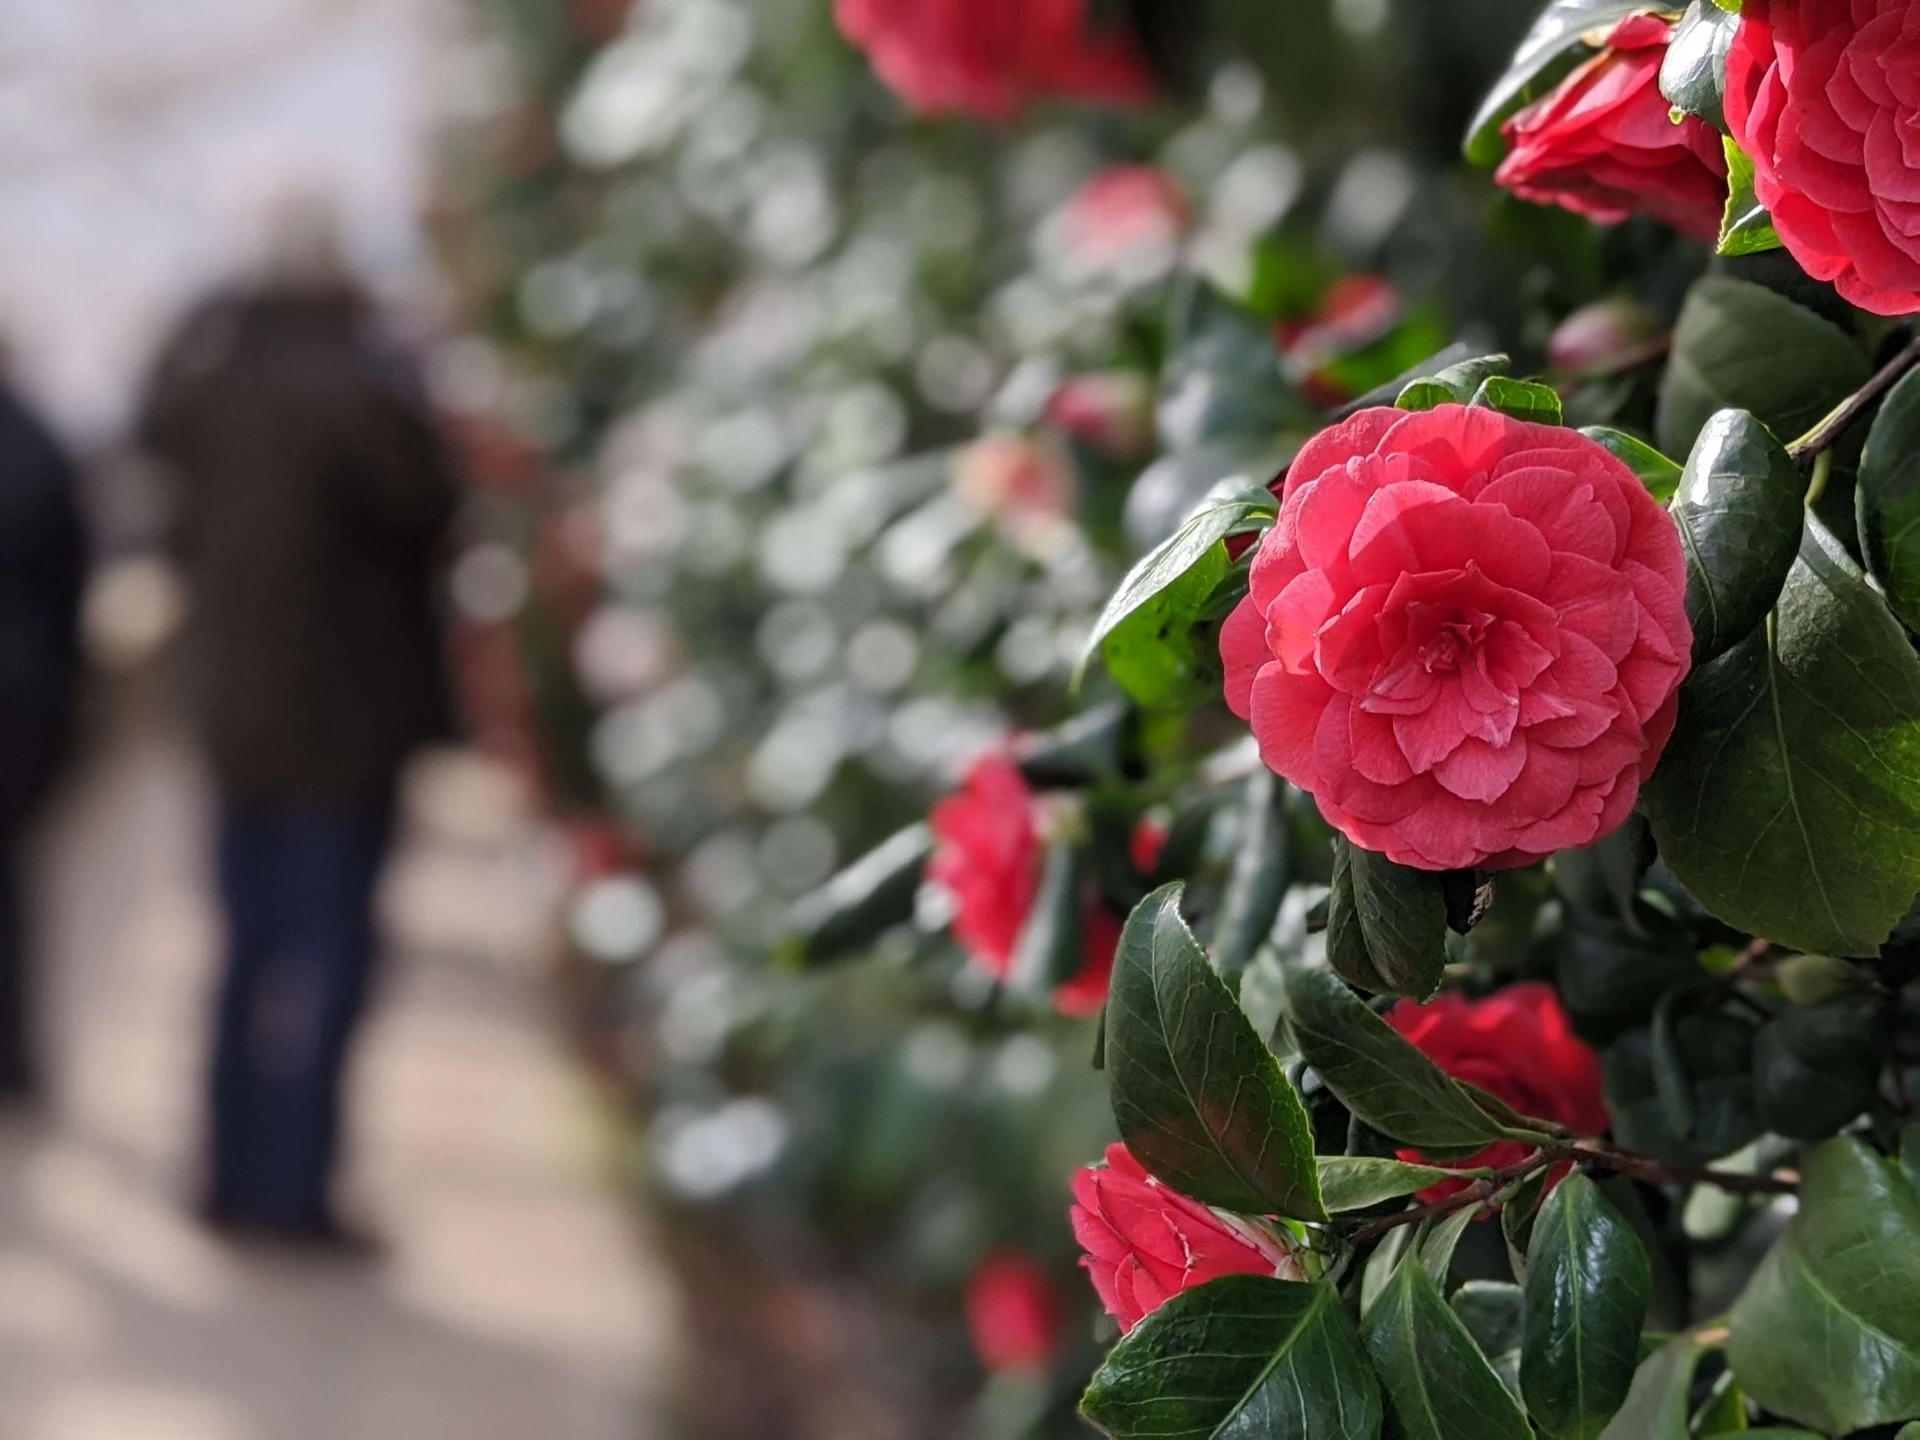 Thế kỷ 19, địa điểm này bị hủy hoại sau một vụ đánh bom. Tuy nhiên, may mắn là giống hoa trà quý hiếm vẫn còn sống sót. Những người từng chiêm ngưỡng miêu tả lại nó có cánh giống hoa hồng và mang màu hồng đặc trưng. Ảnh: Alamy.